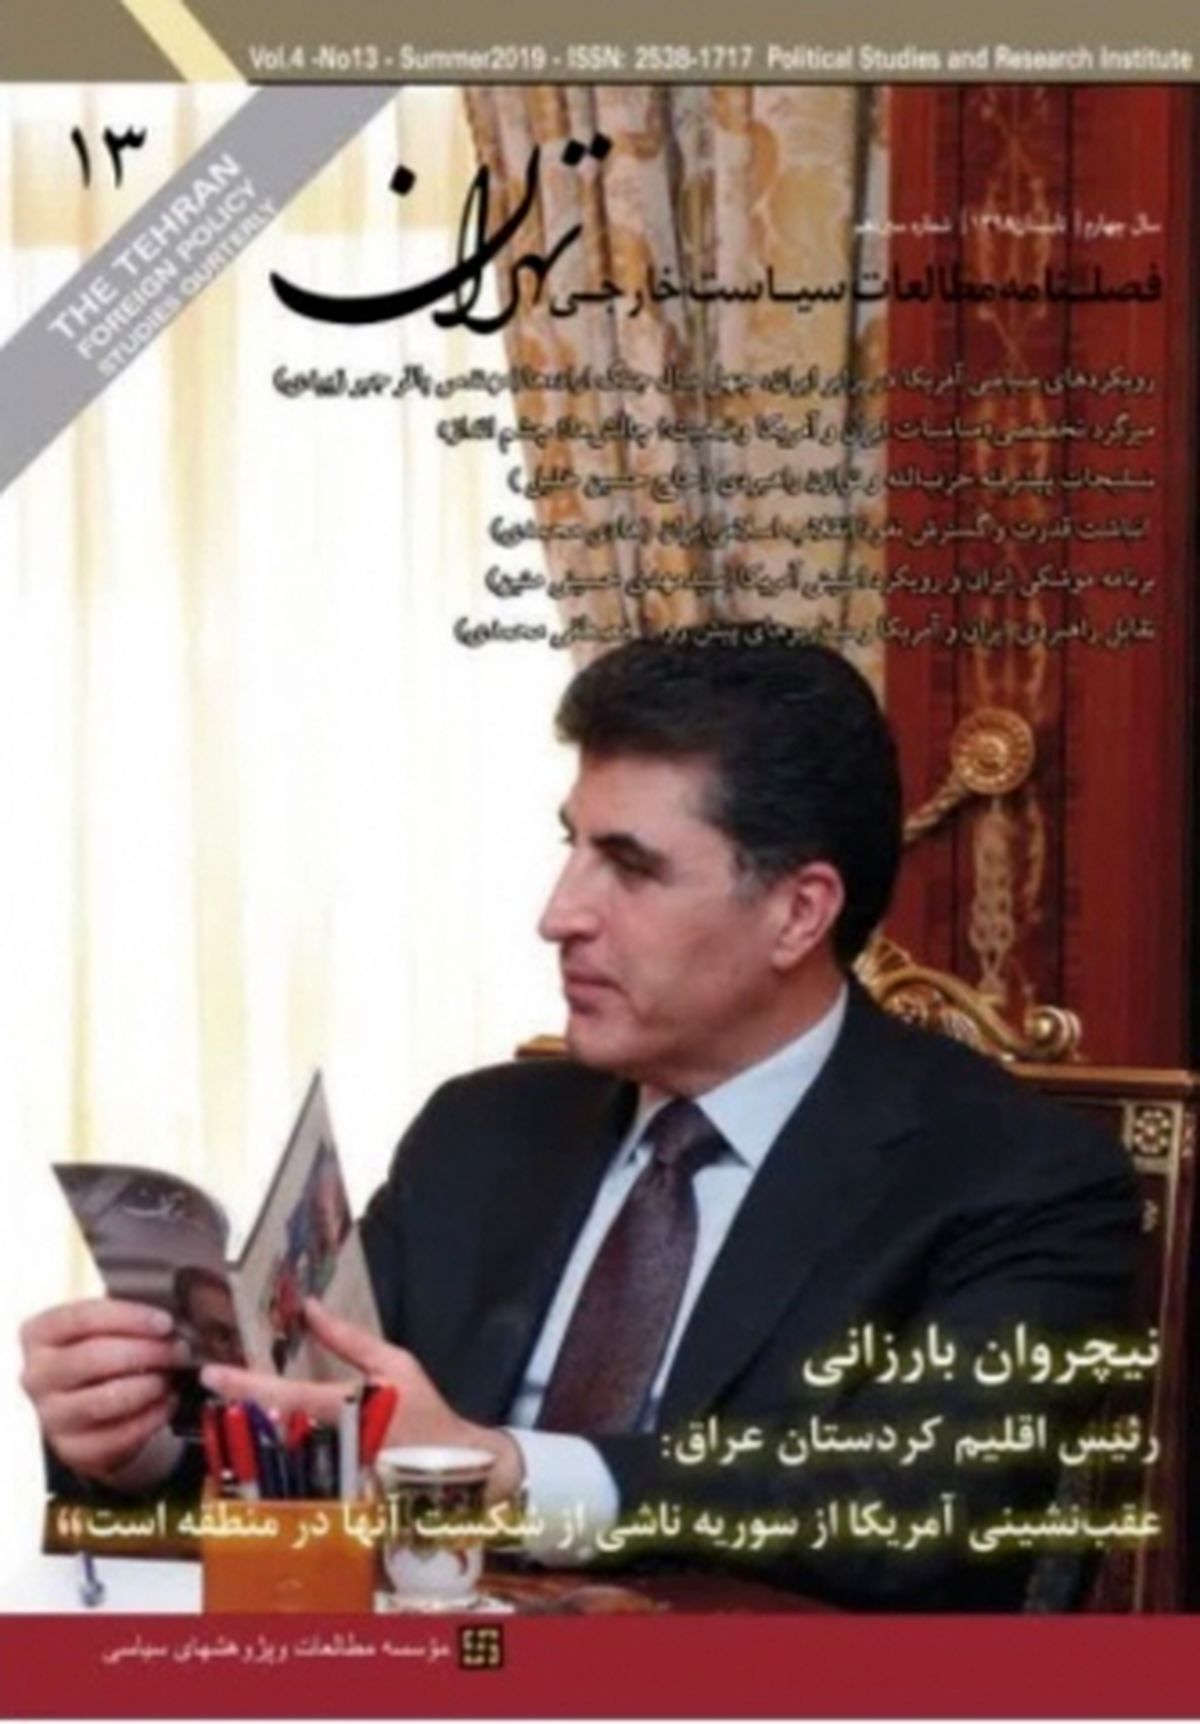 سیزدهمین شماره از "فصلنامه مطالعات سیاست خارجی تهران" منتشر شد